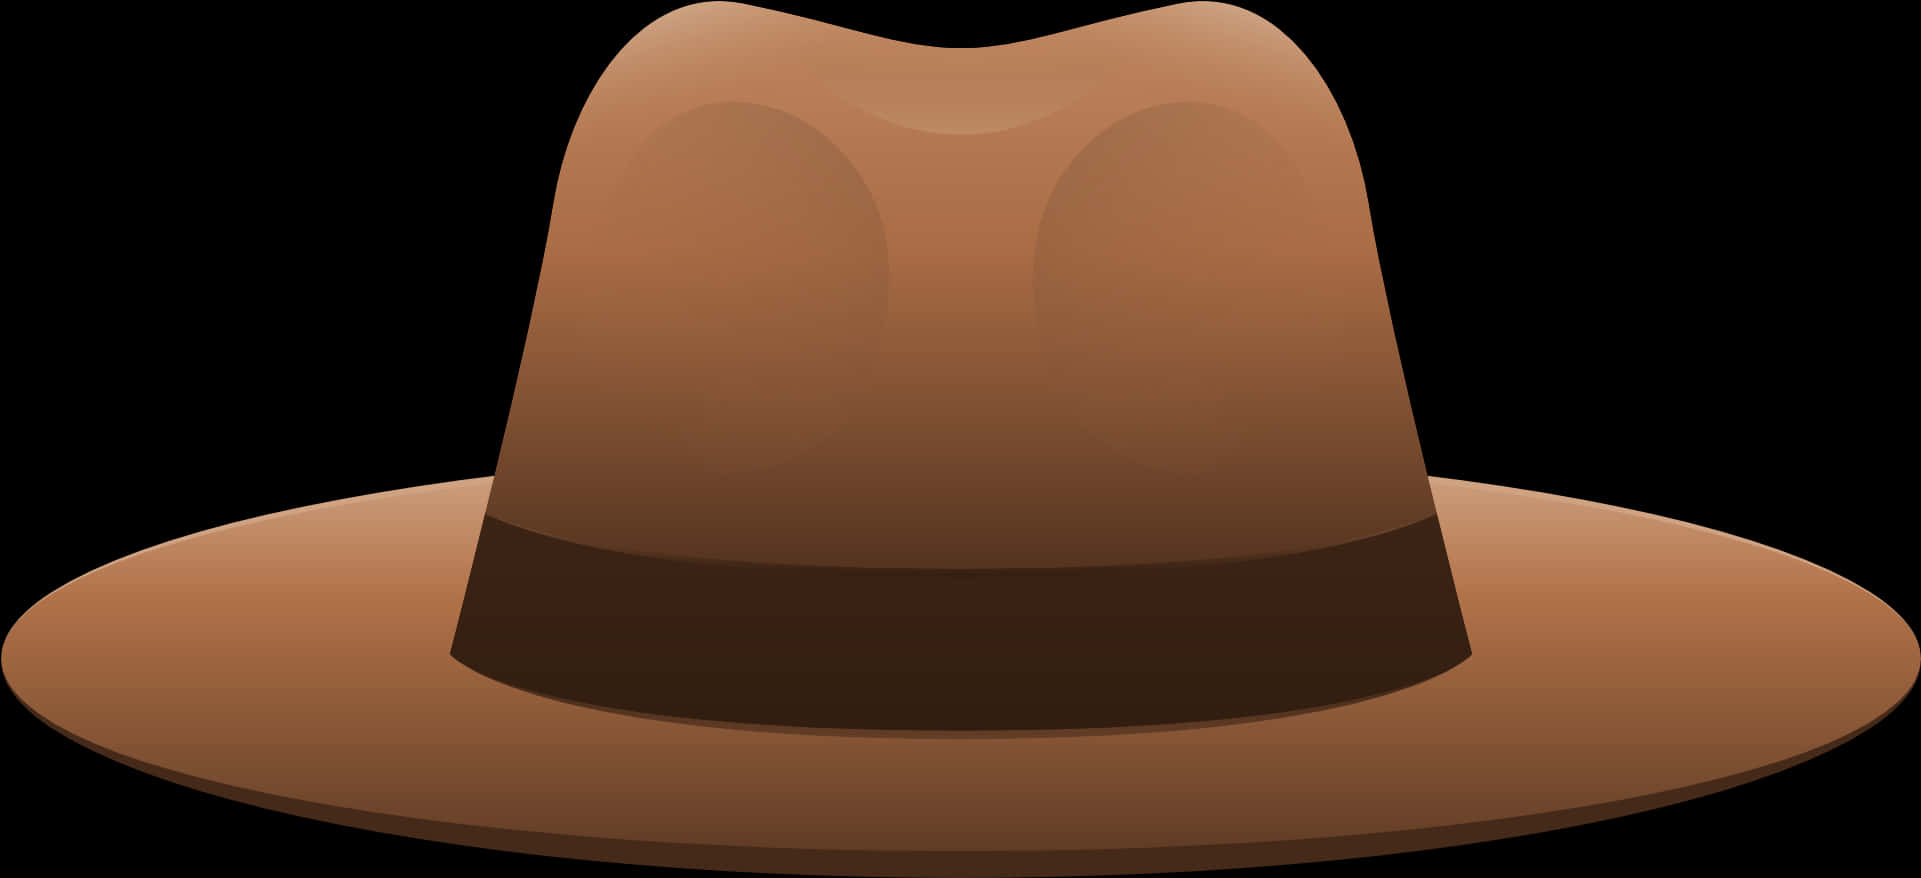 Brown Cowboy Hat Illustration